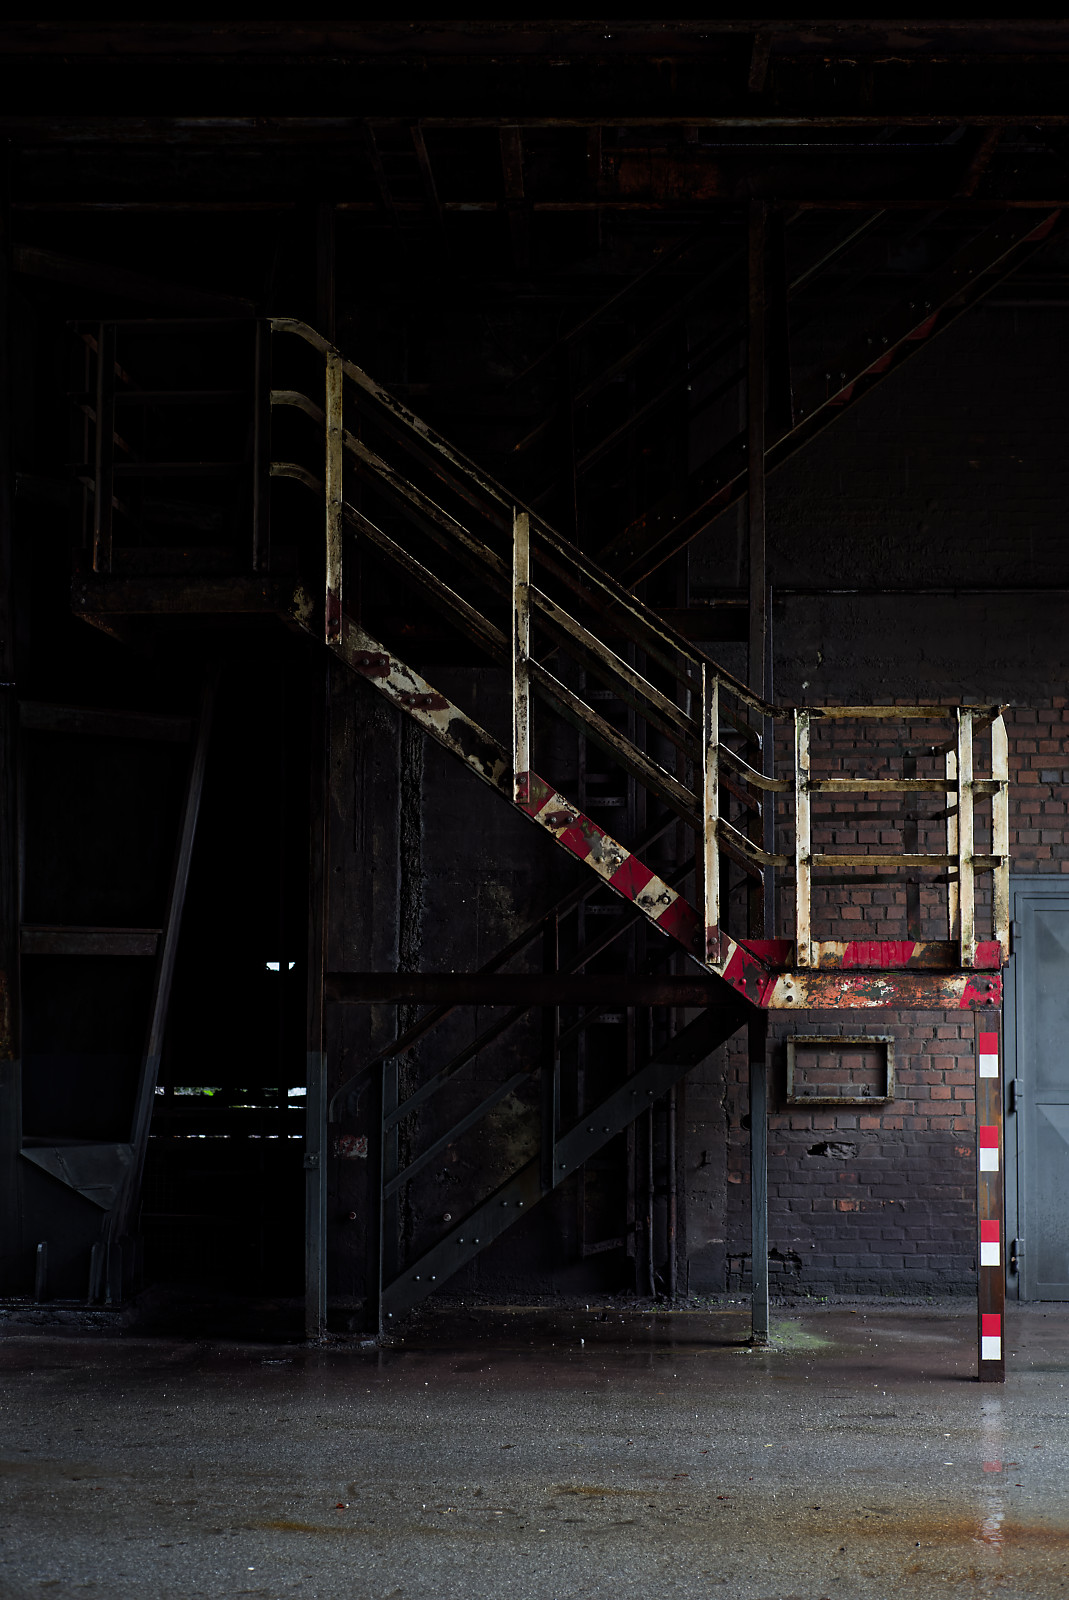 TreppenAufgang in einer IndustrieHalle, weißes Geländer mit roten Streifen, ansonsten sehr dunkel